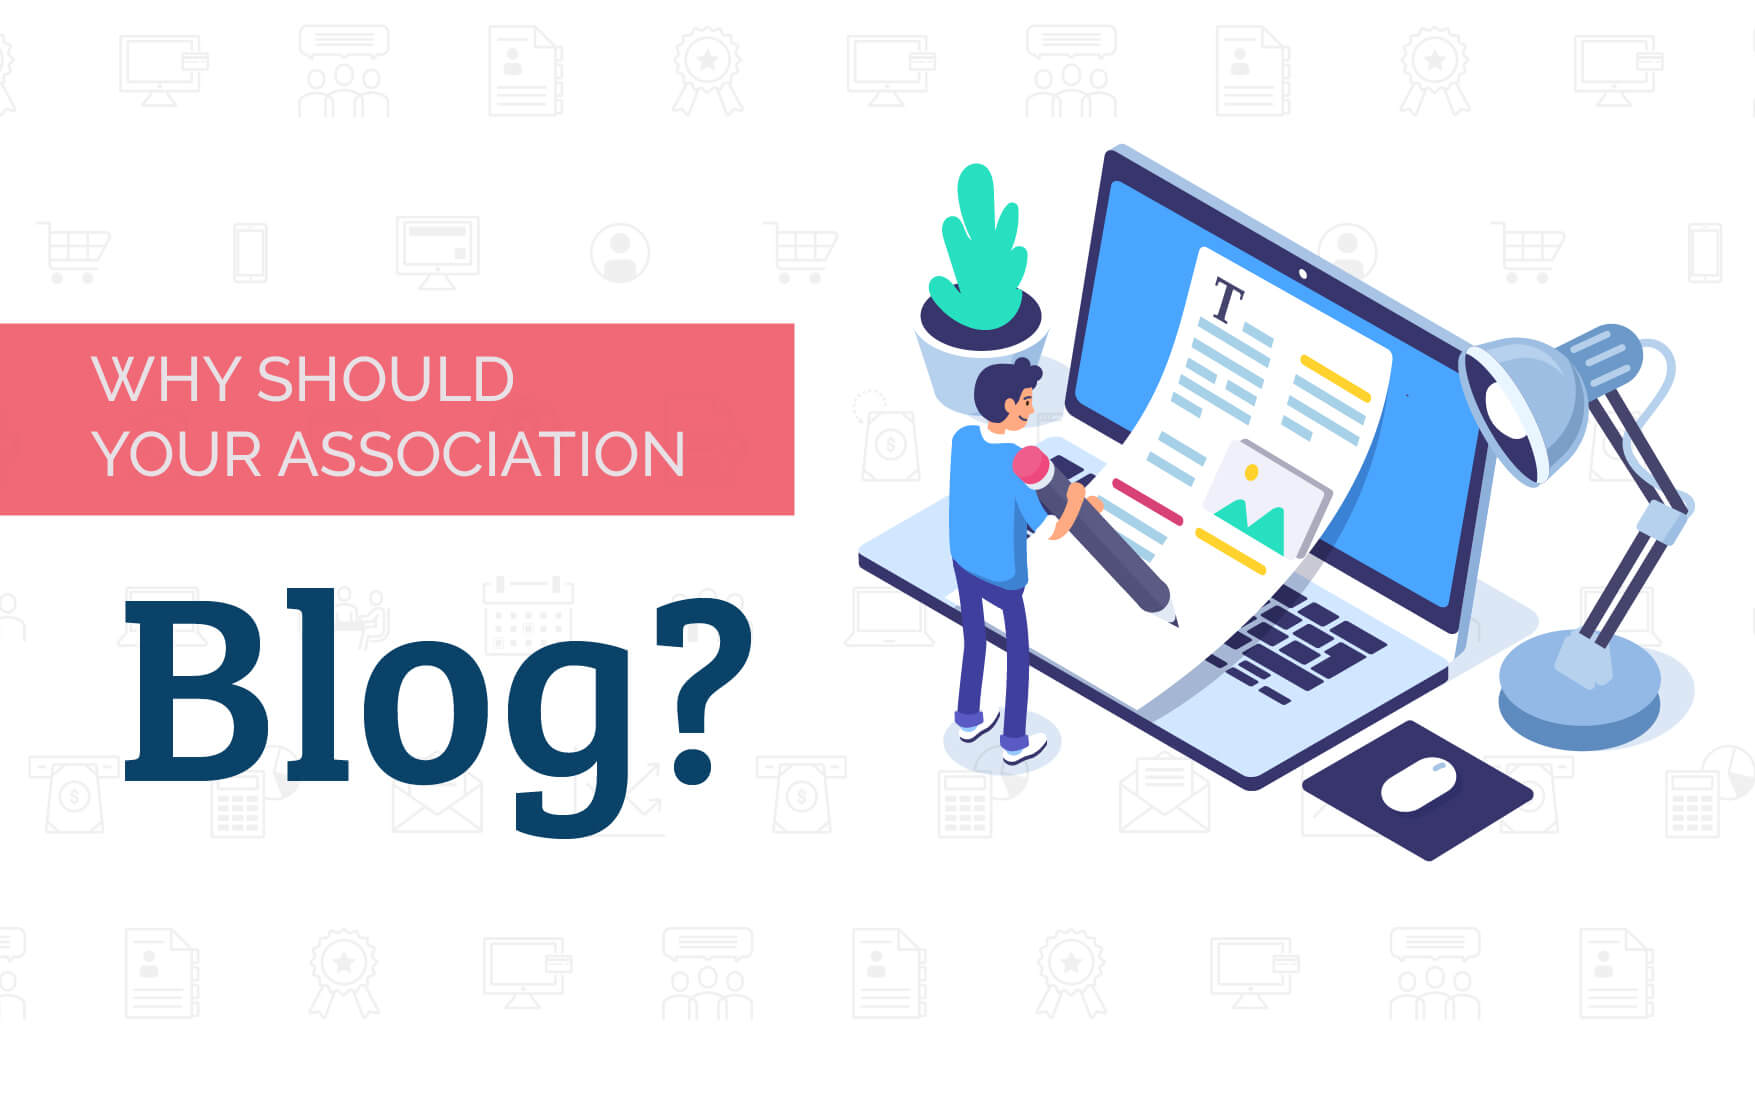 Should your association blog?